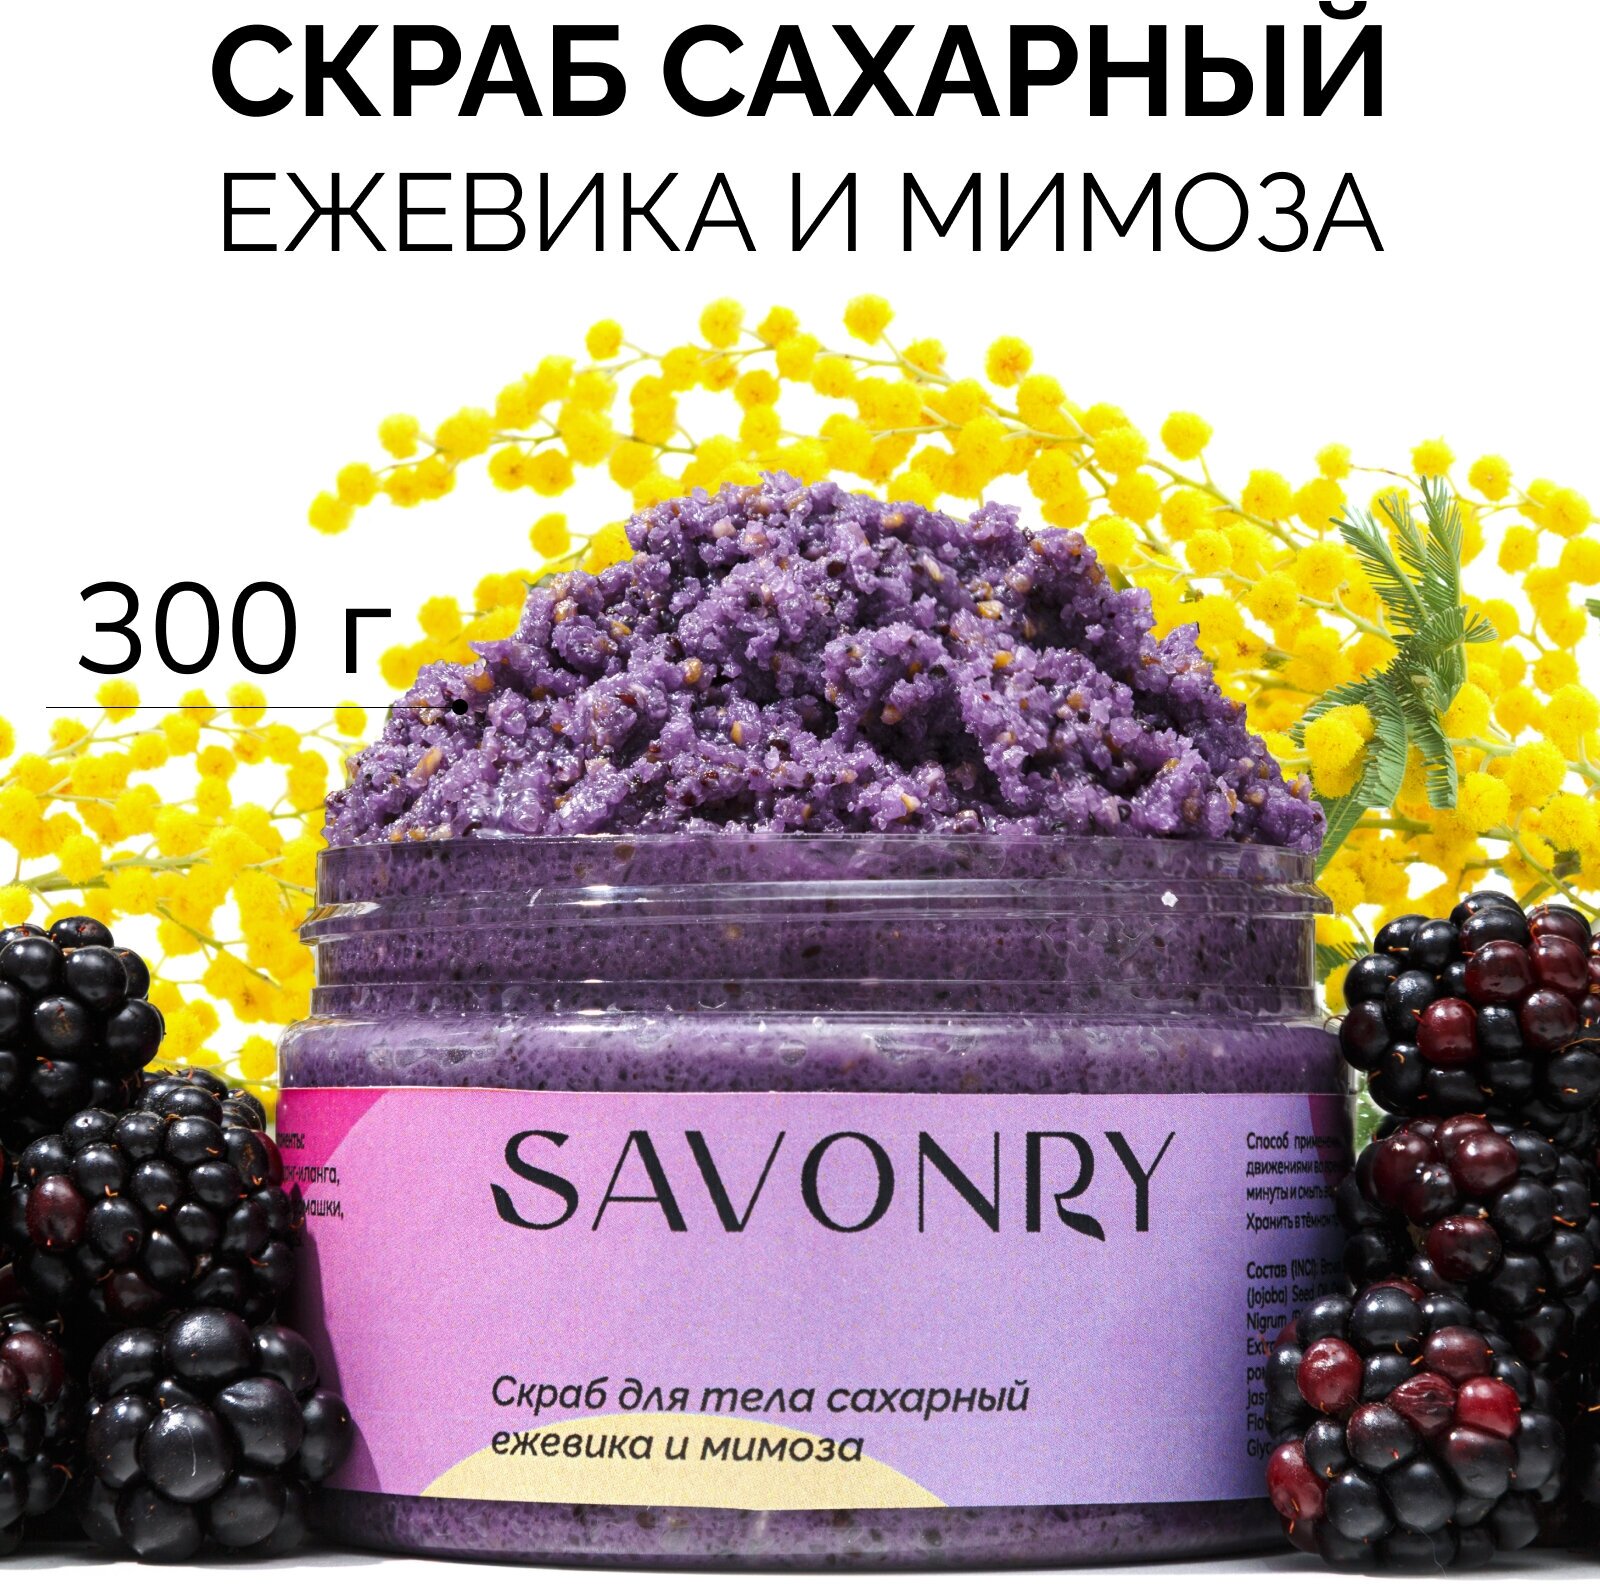 SAVONRY Скраб для тела сахарный ежевика и мимоза, 300г / с экстрактами и маслами /на твердом масле карите /питательный